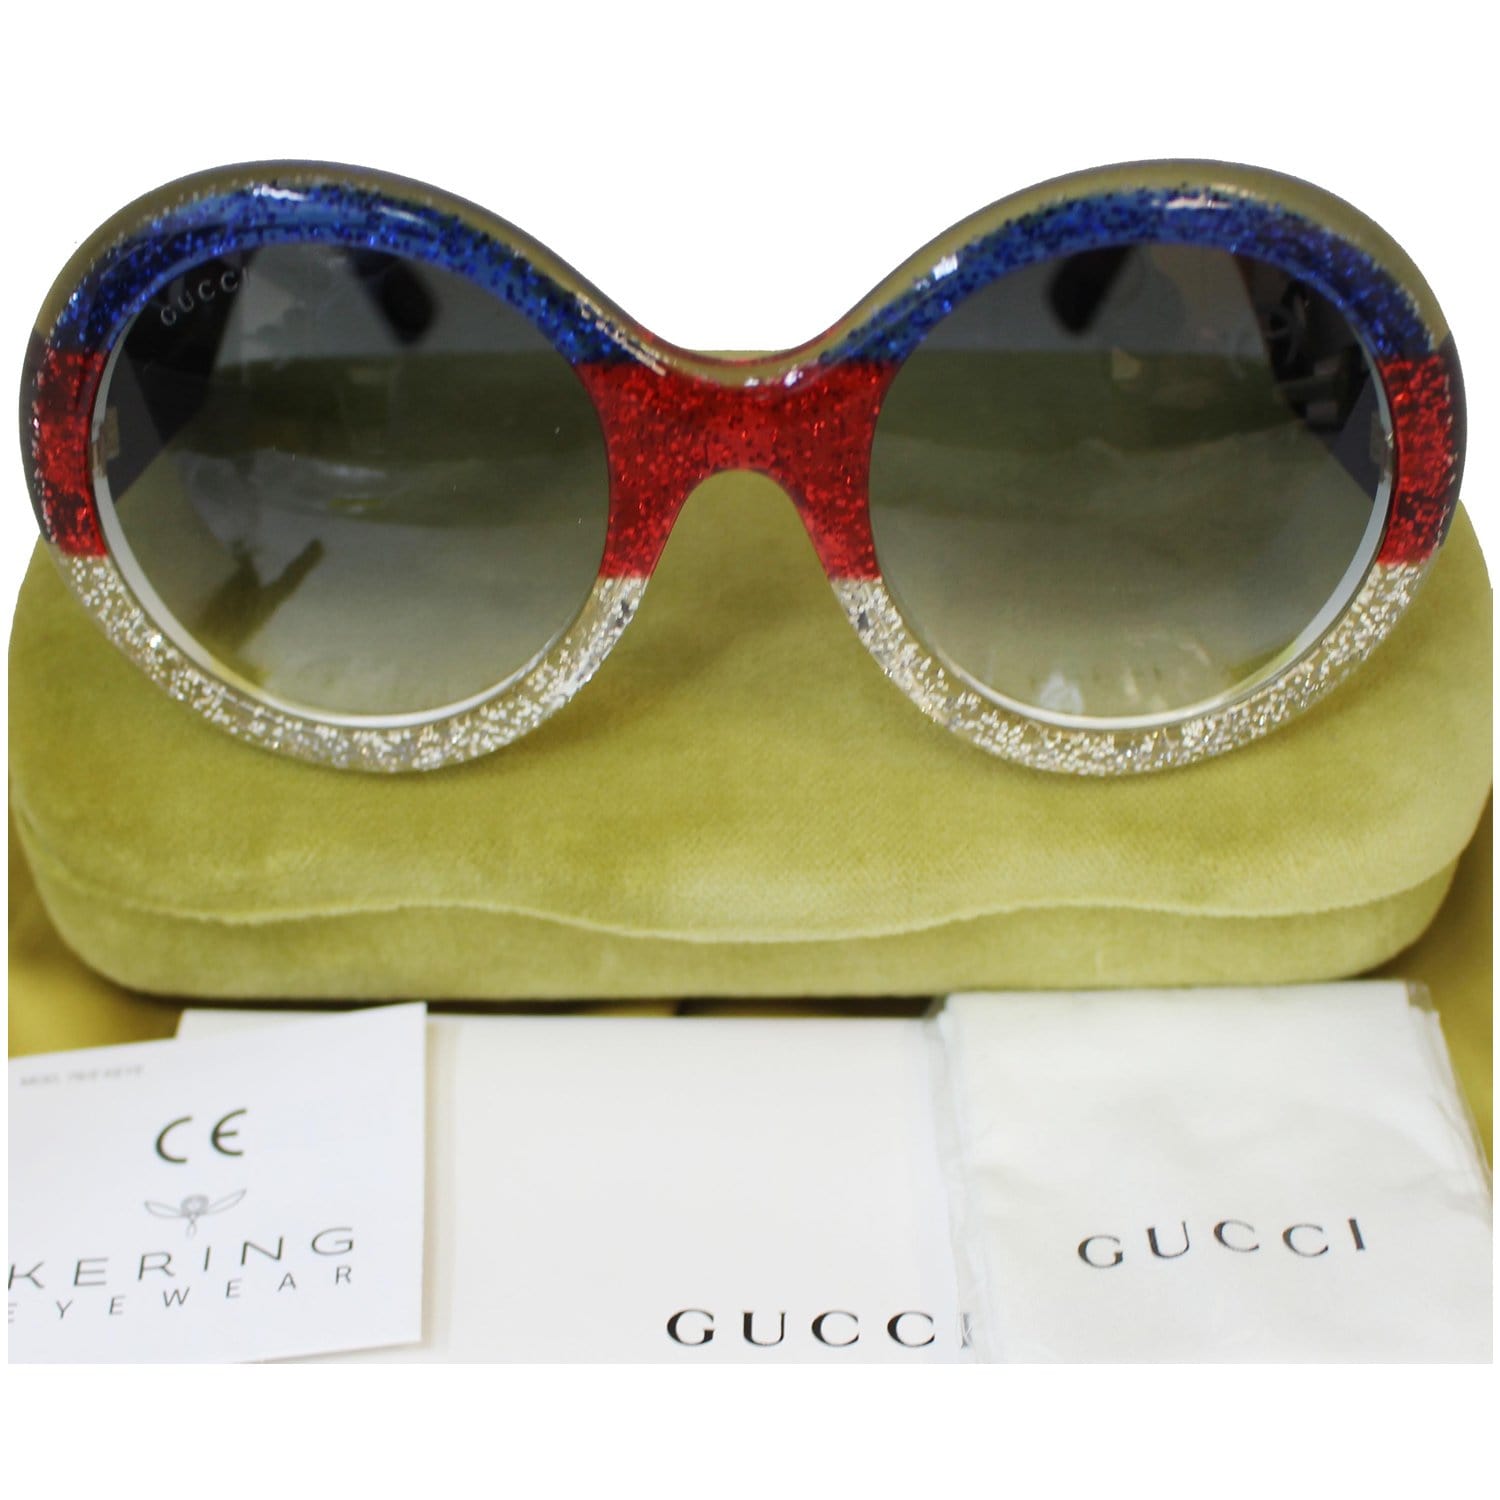 Gucci  Kering Eyewear